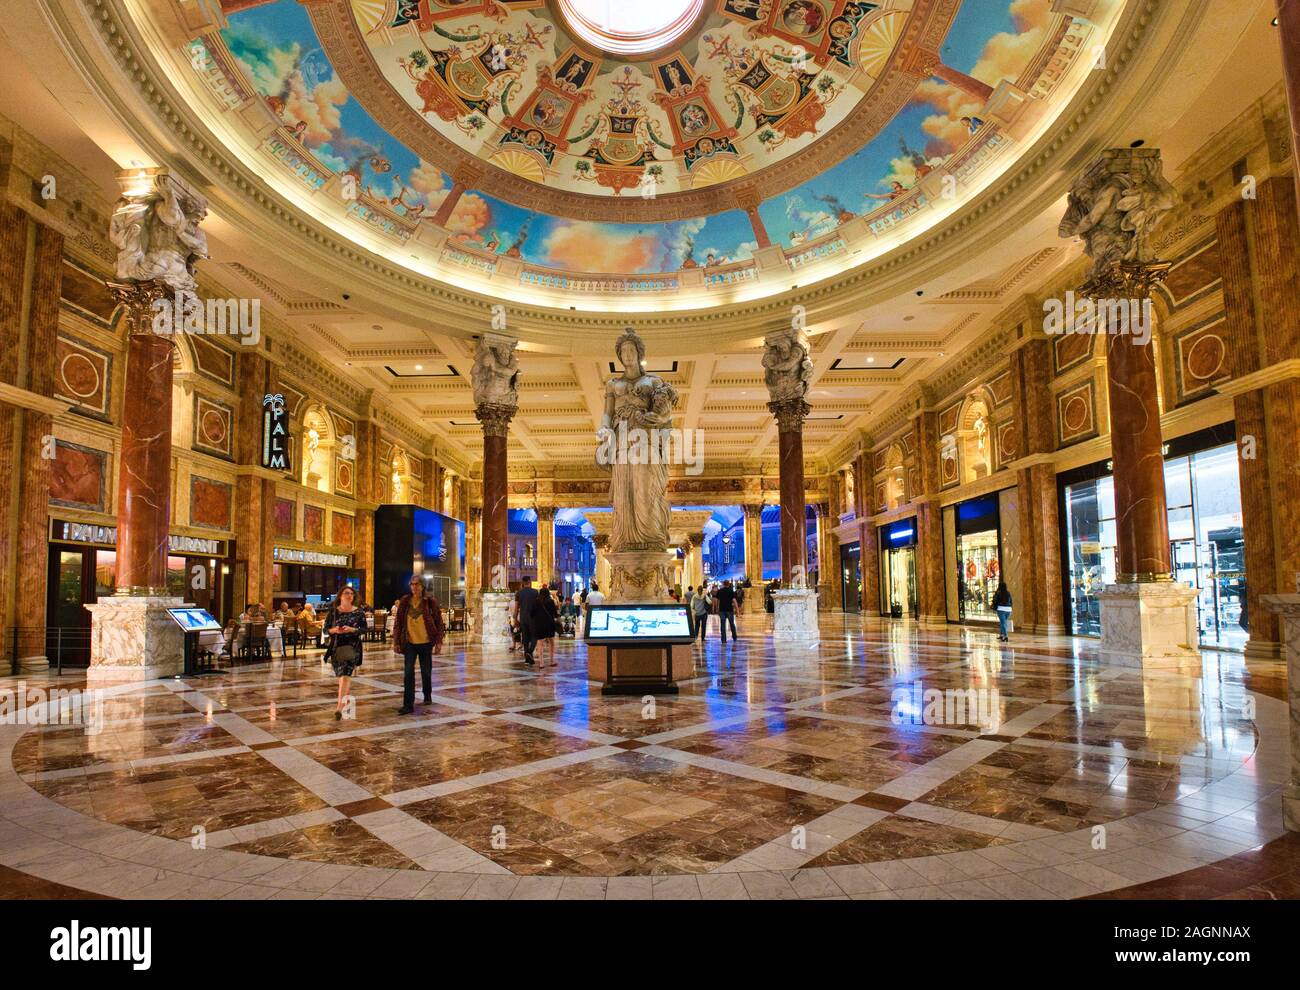 Statues et décor orné à l'intérieur du centre commercial de luxe Forum Shops du Caesars Palace, Las Vegas, Nevada, États-Unis Banque D'Images